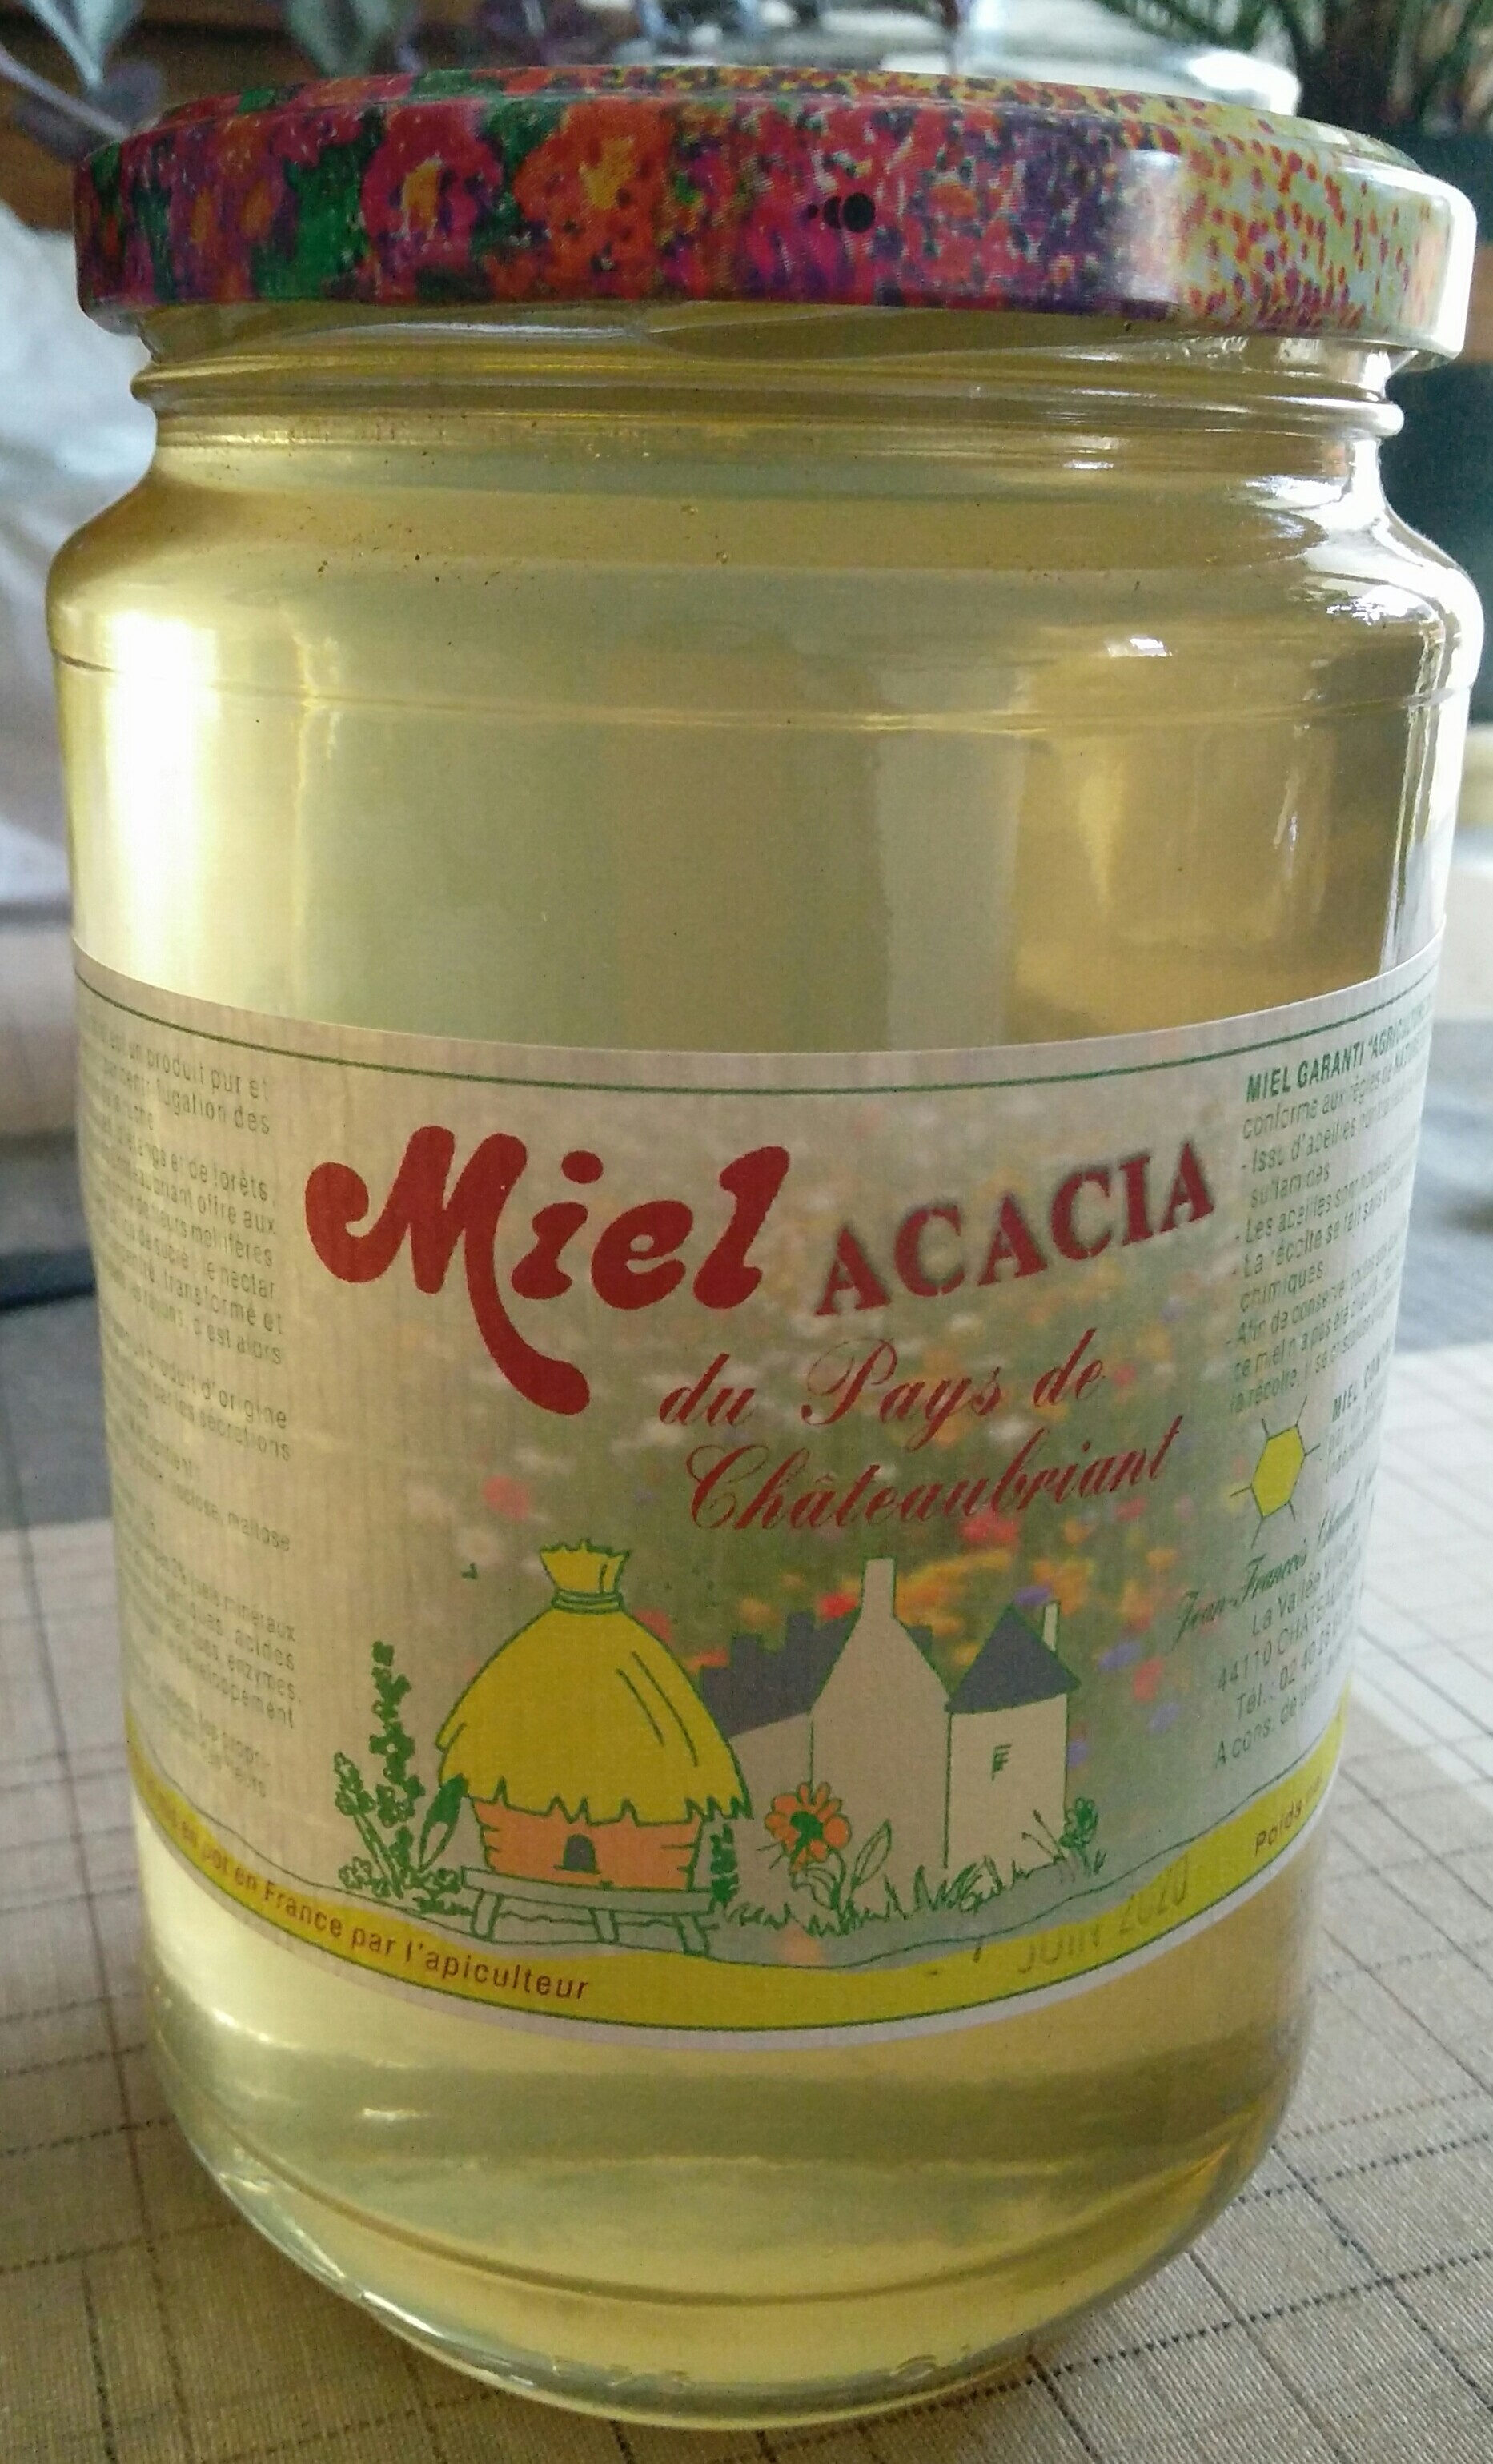 Miel Acacia du Pays de Chateaubriant - Product - fr